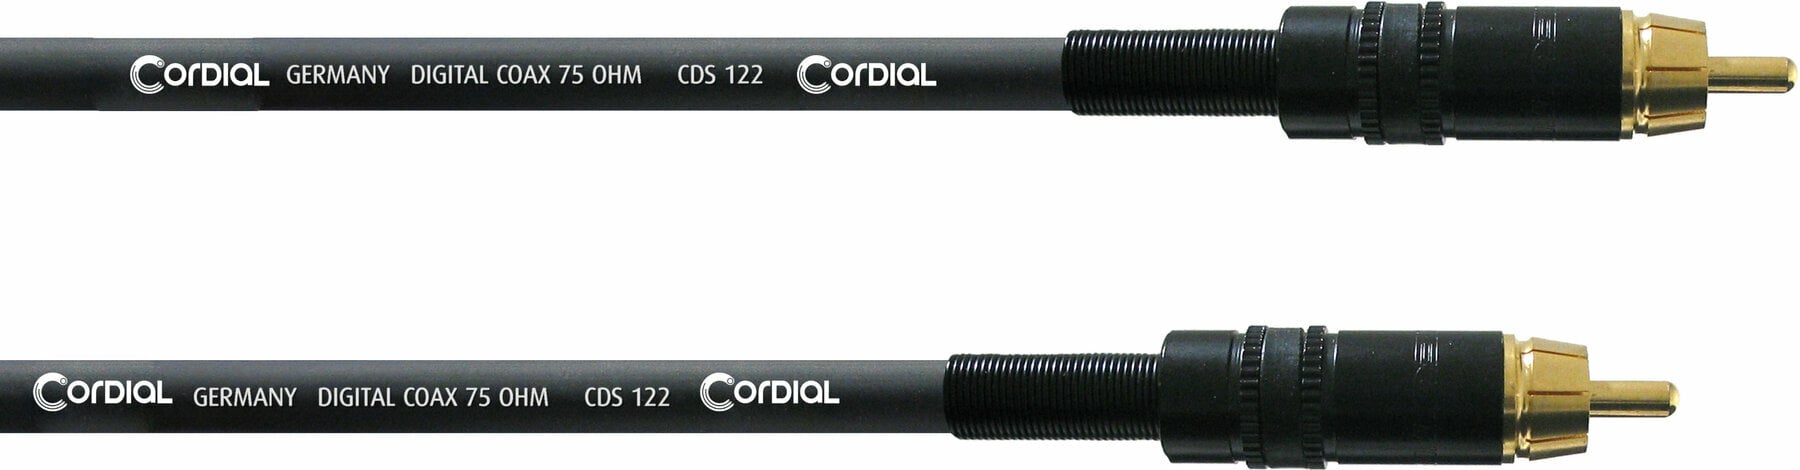 Äänikaapeli Cordial CPDS 5 CC 5 m Äänikaapeli